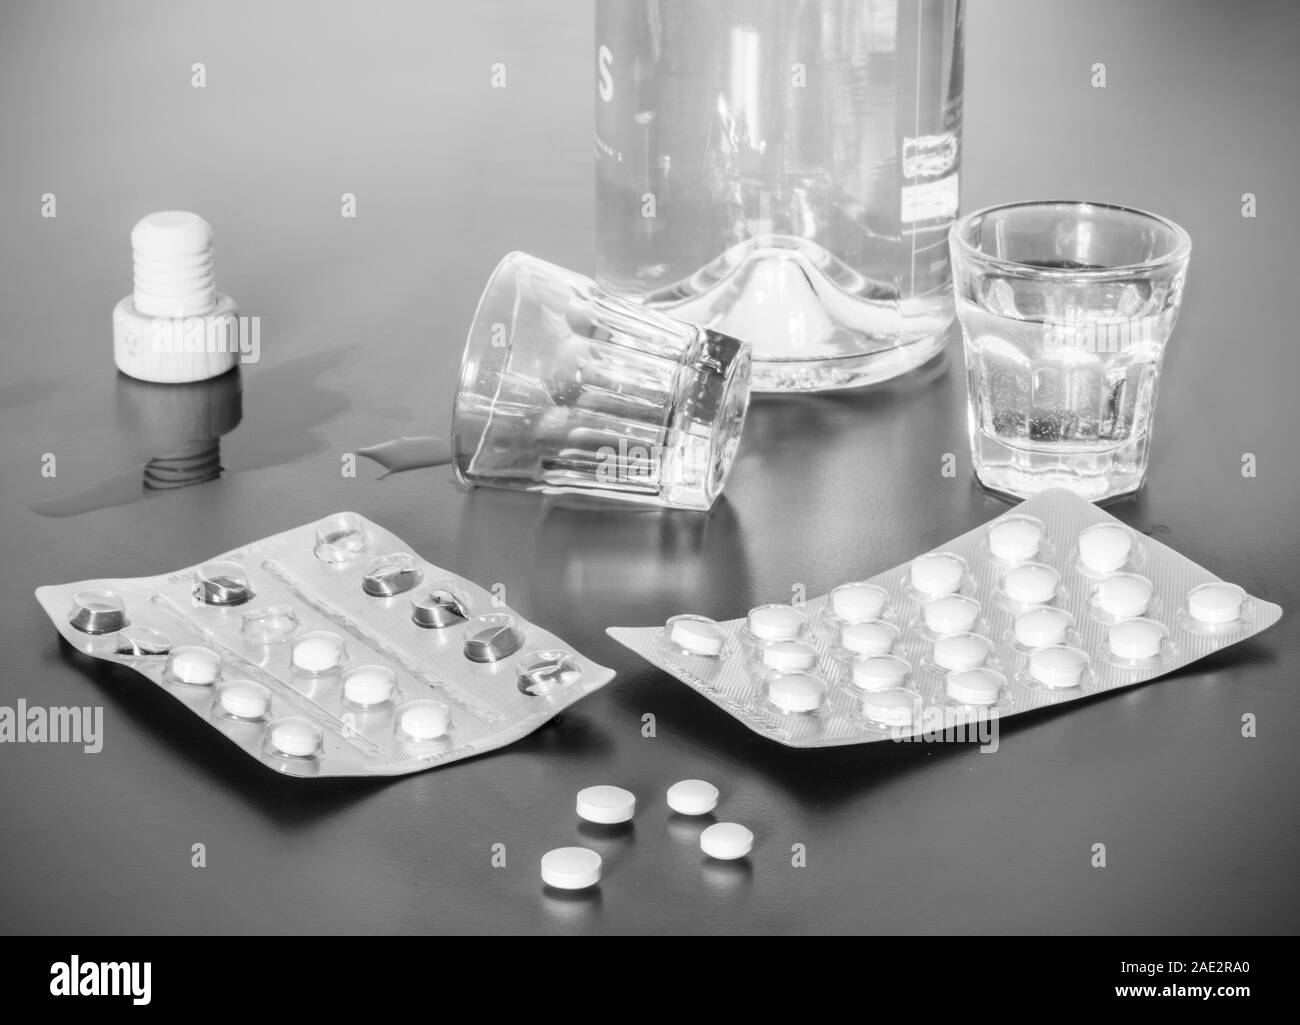 Tabletten und Alkohol auf einem grauen Tabelle. Konzept für Drogenmißbrauch  Stockfotografie - Alamy